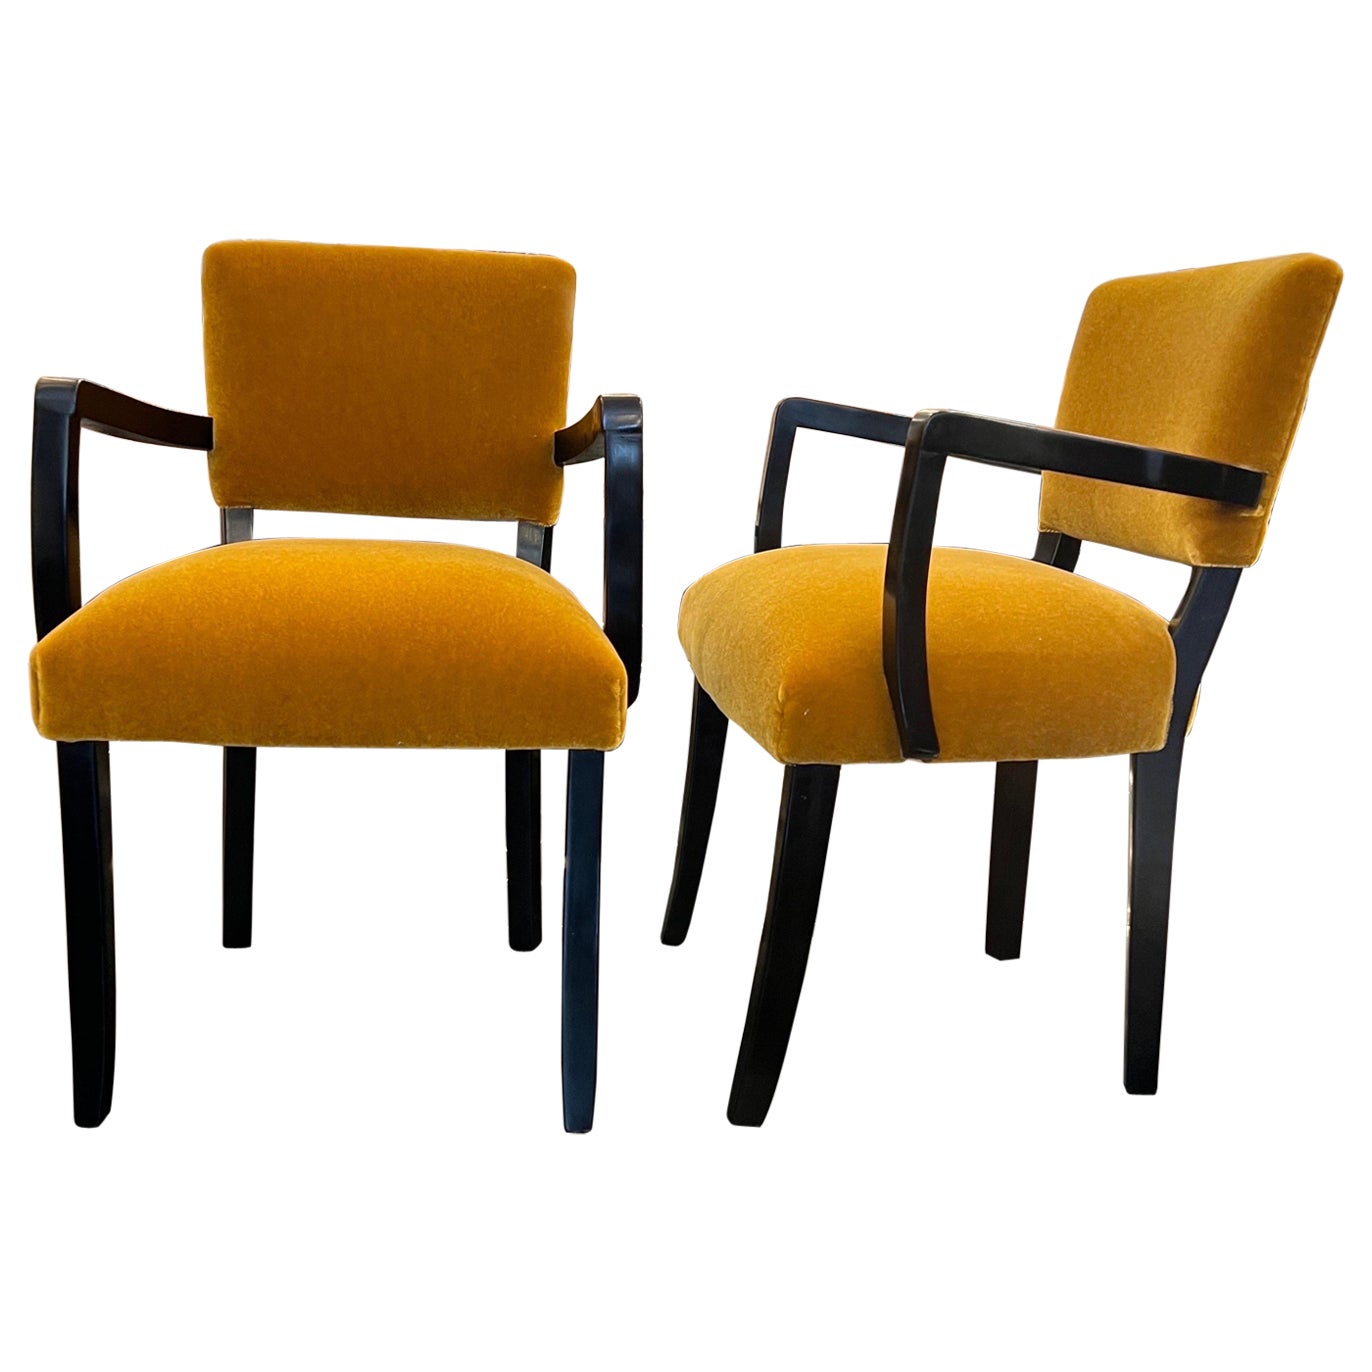 A fine pair French Bridge chairs 